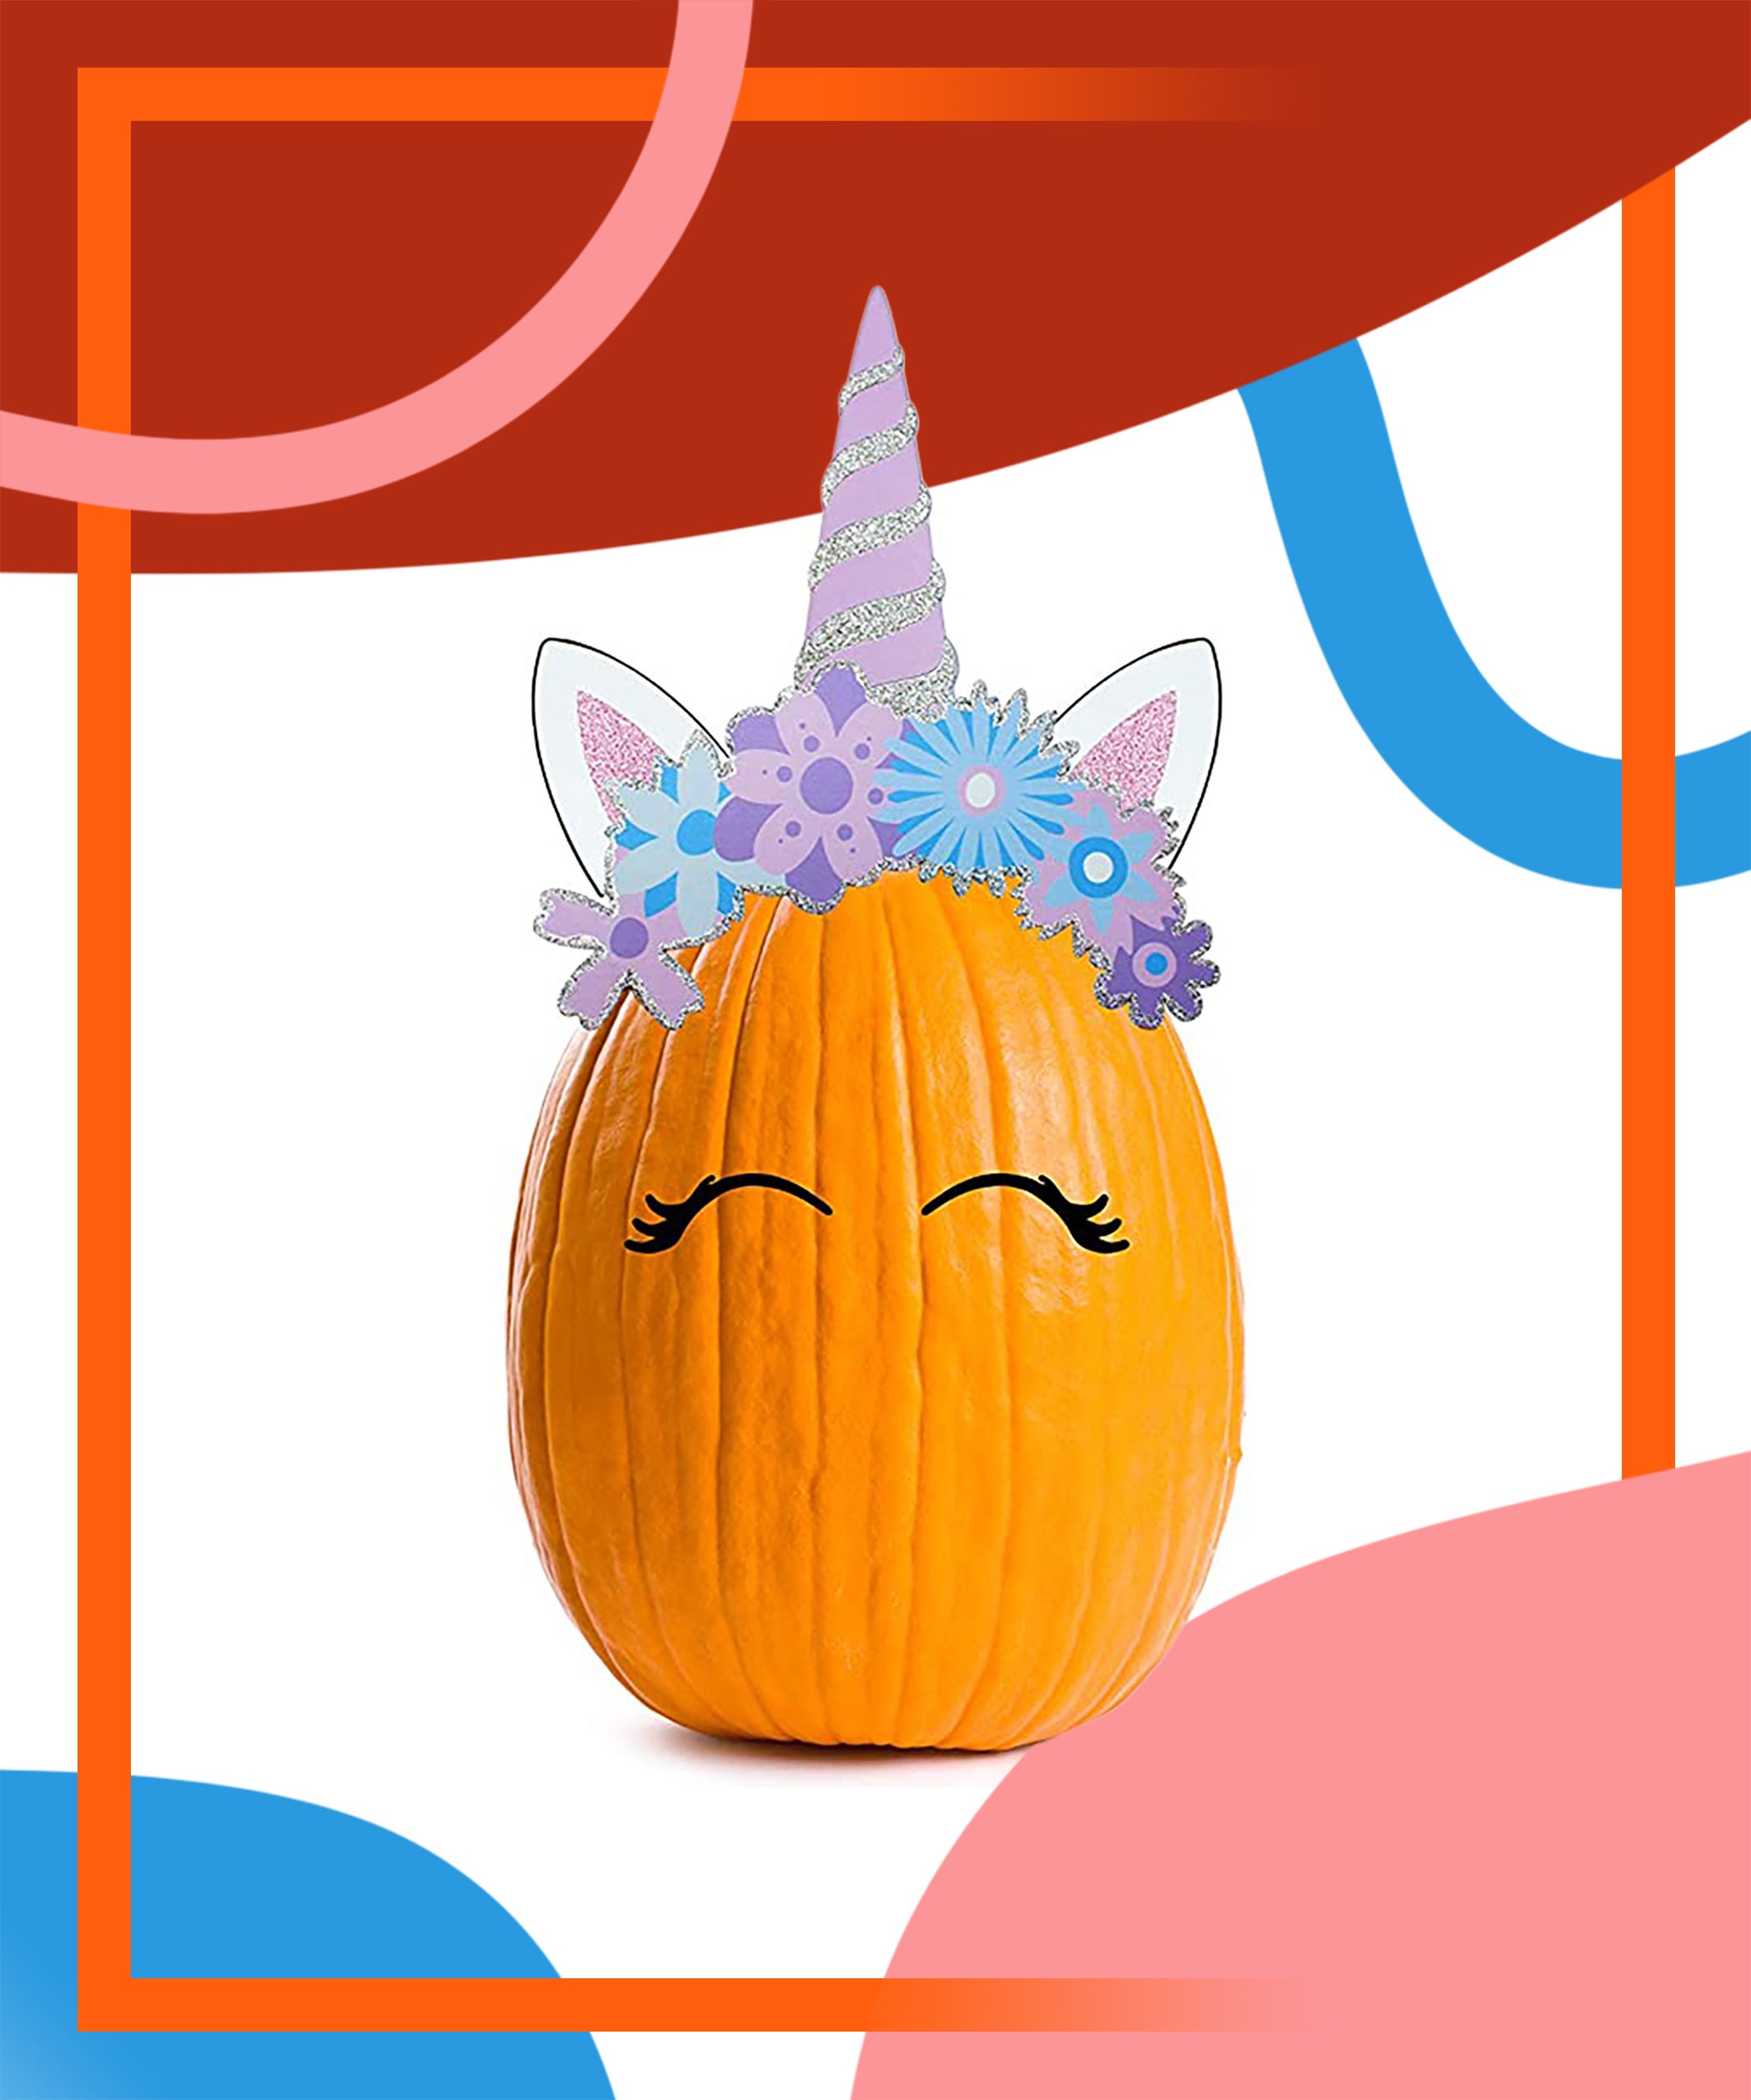 9 pi/èces Pumpkin Carving Kit Outils de Sculpture en Acier Inoxydable Professional pour la D/écoration d/’Halloween Sunwuun Halloween Kit de Sculpture de Citrouille